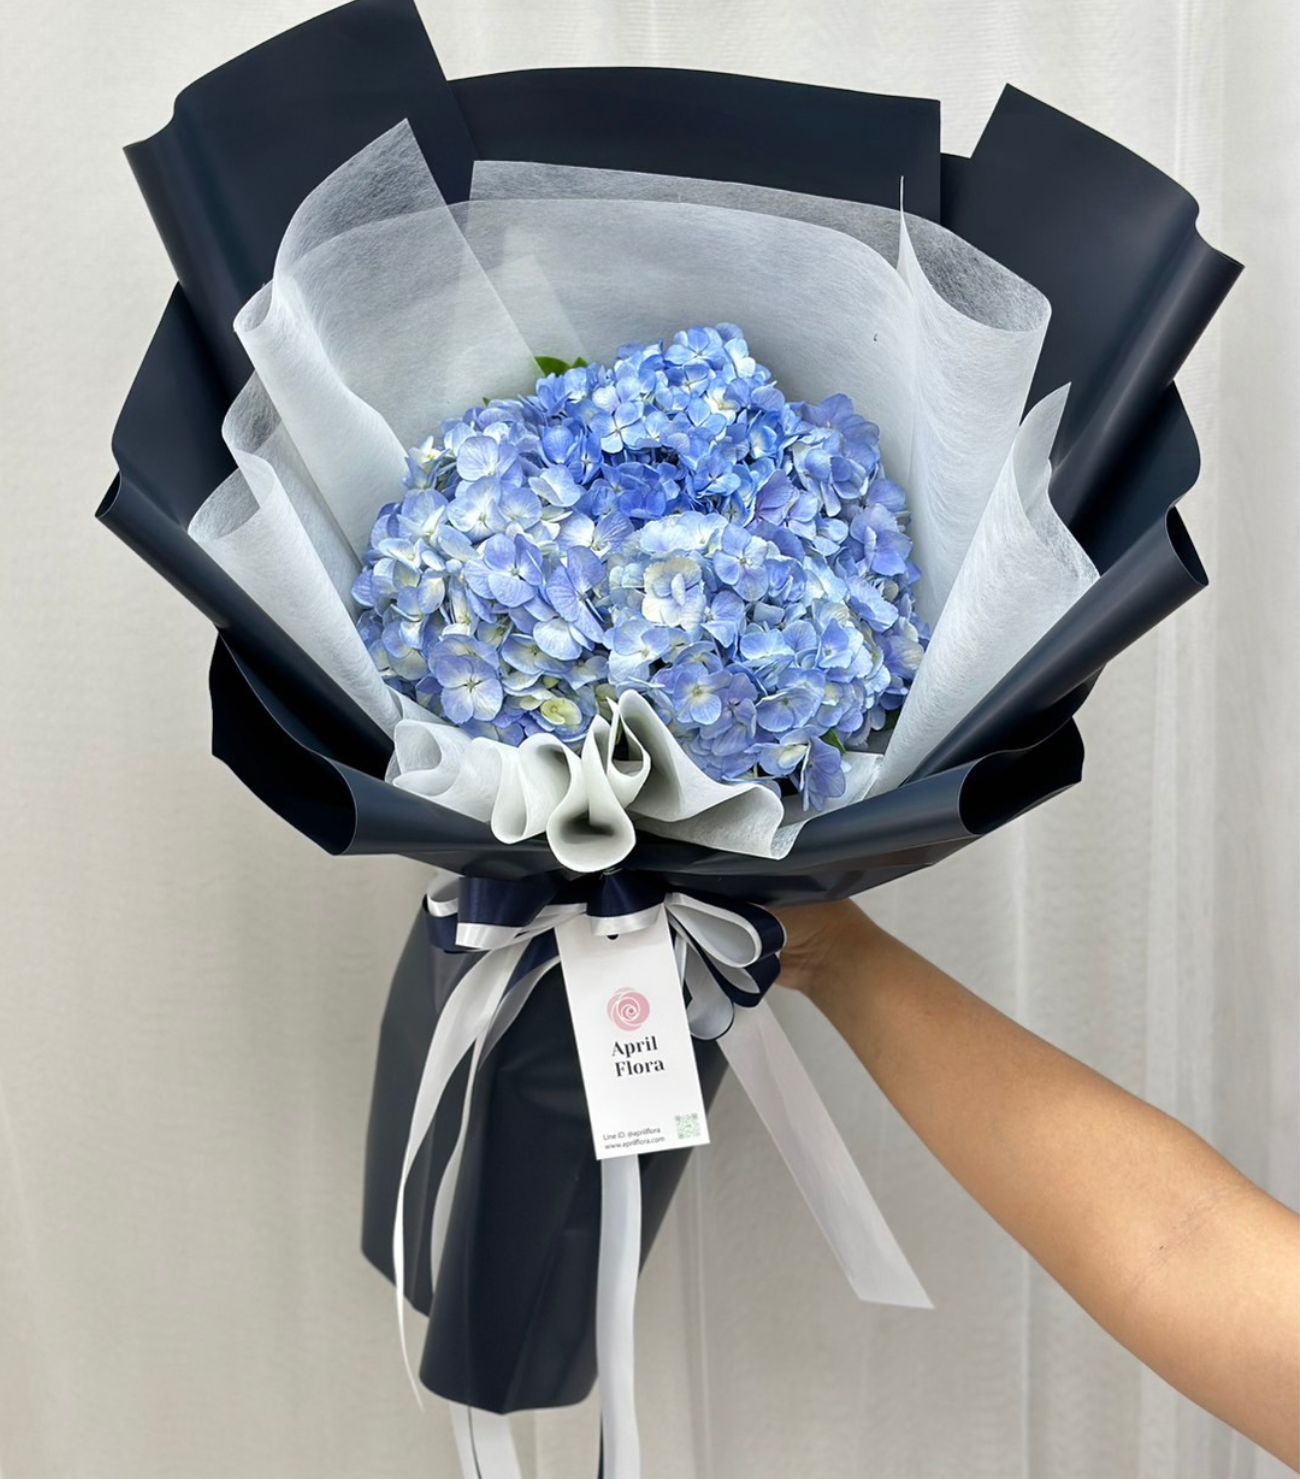 Pastel Blue Bouquet With Hydrangea - April Flora